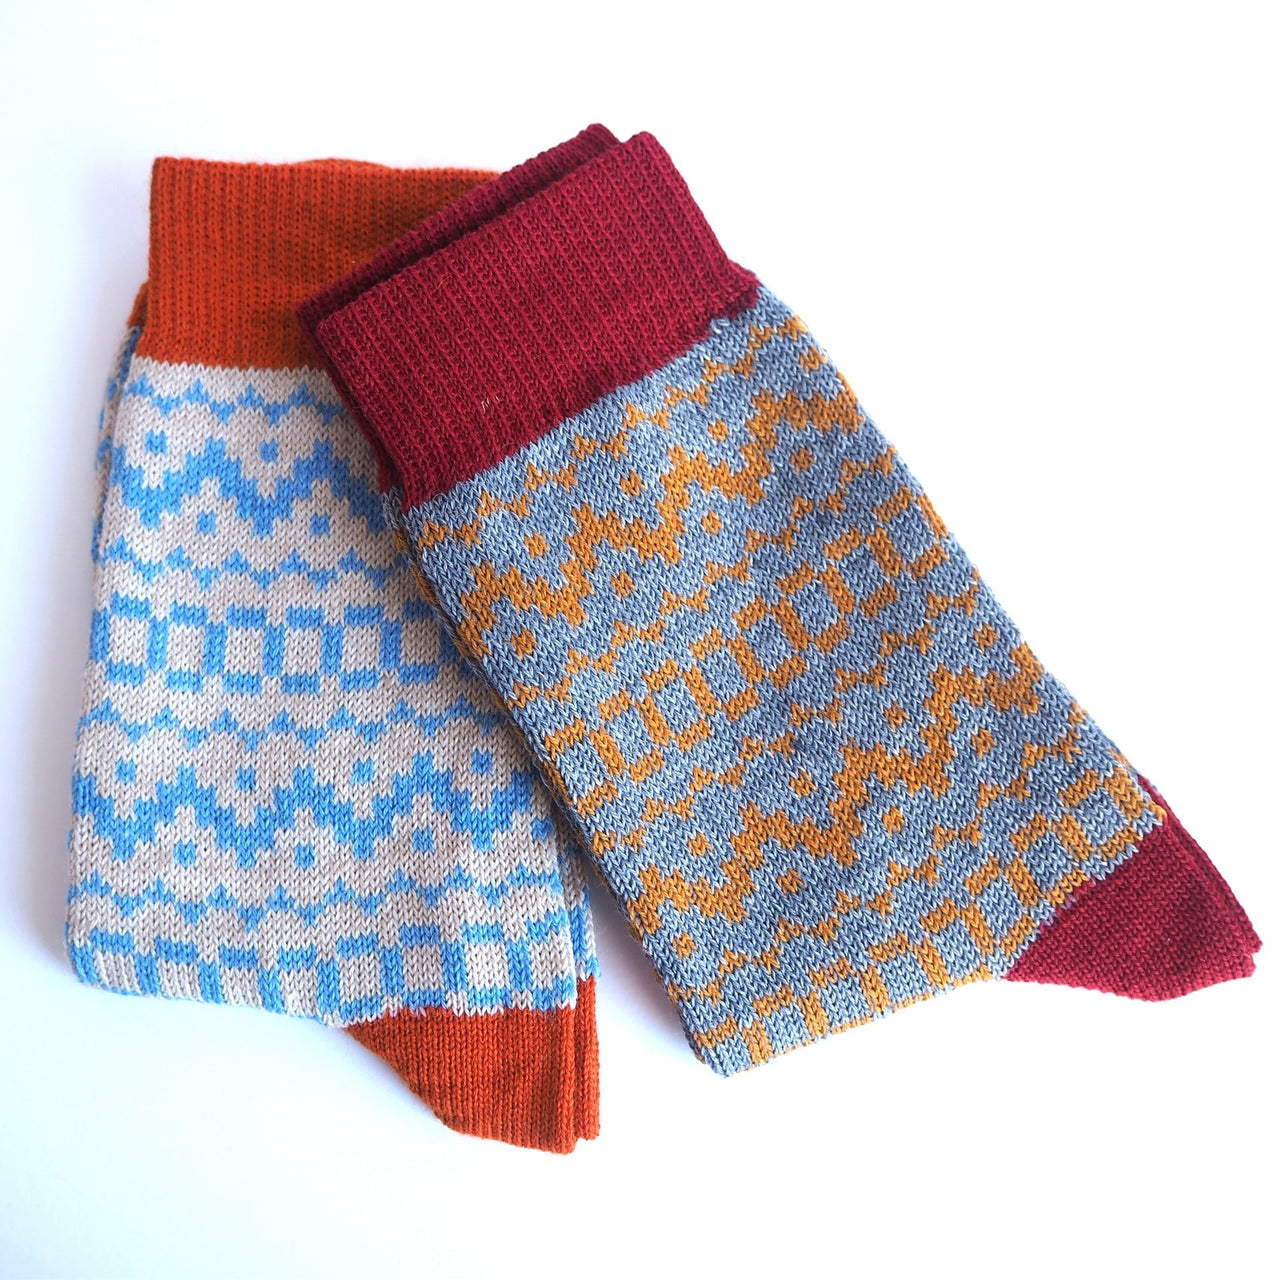 Snug Socks - Made Scotland